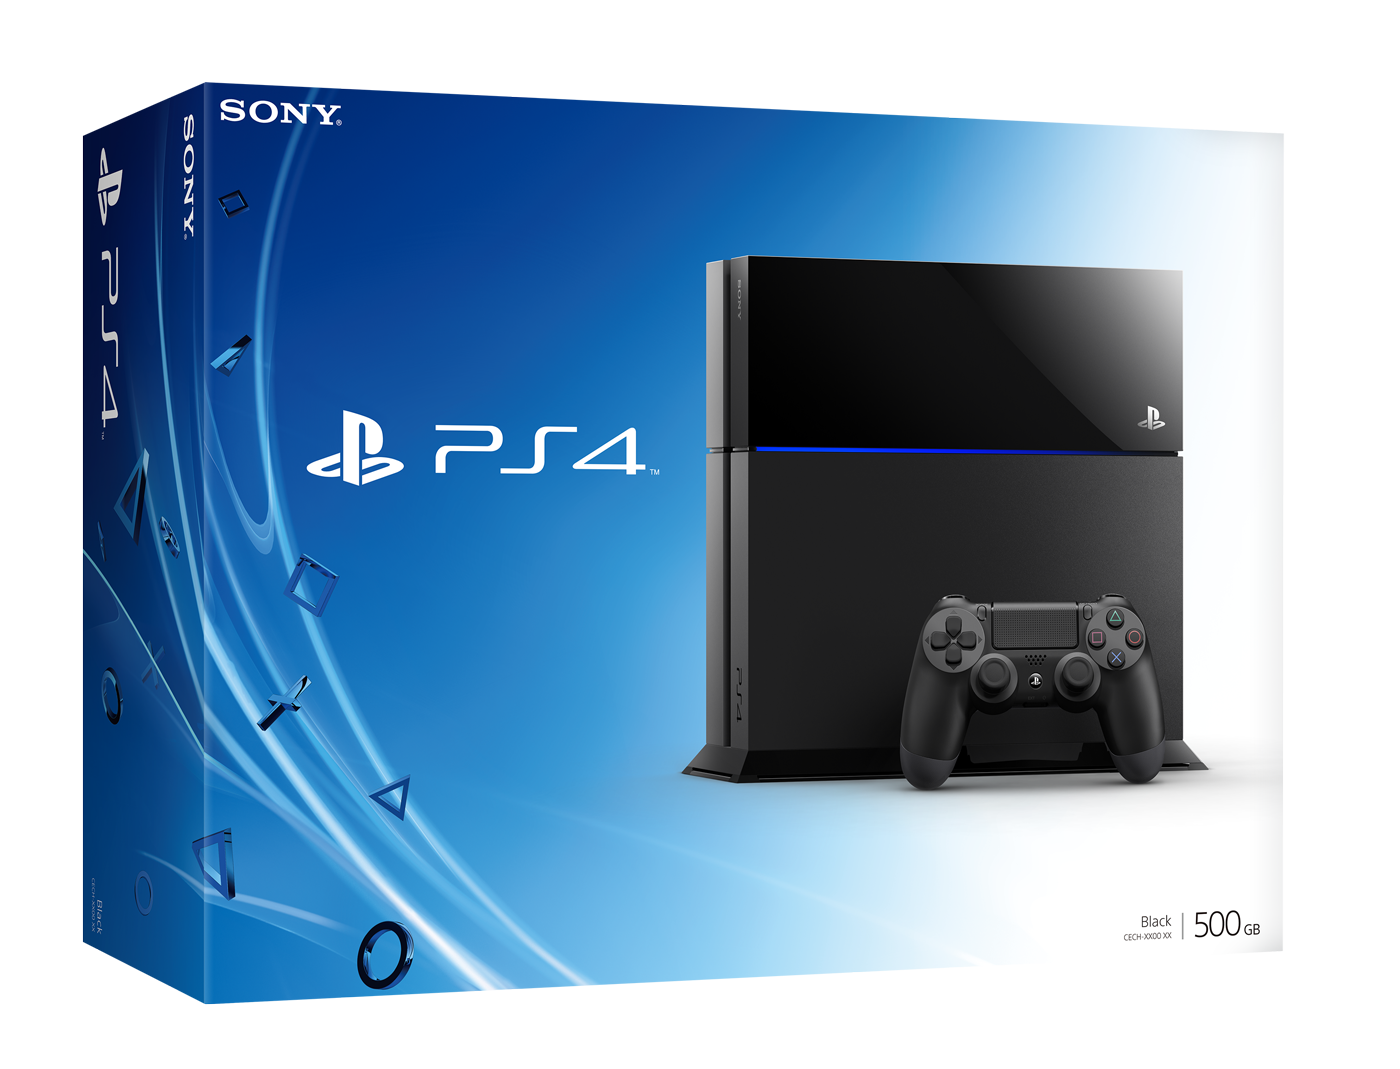 Image de PlayStation 4